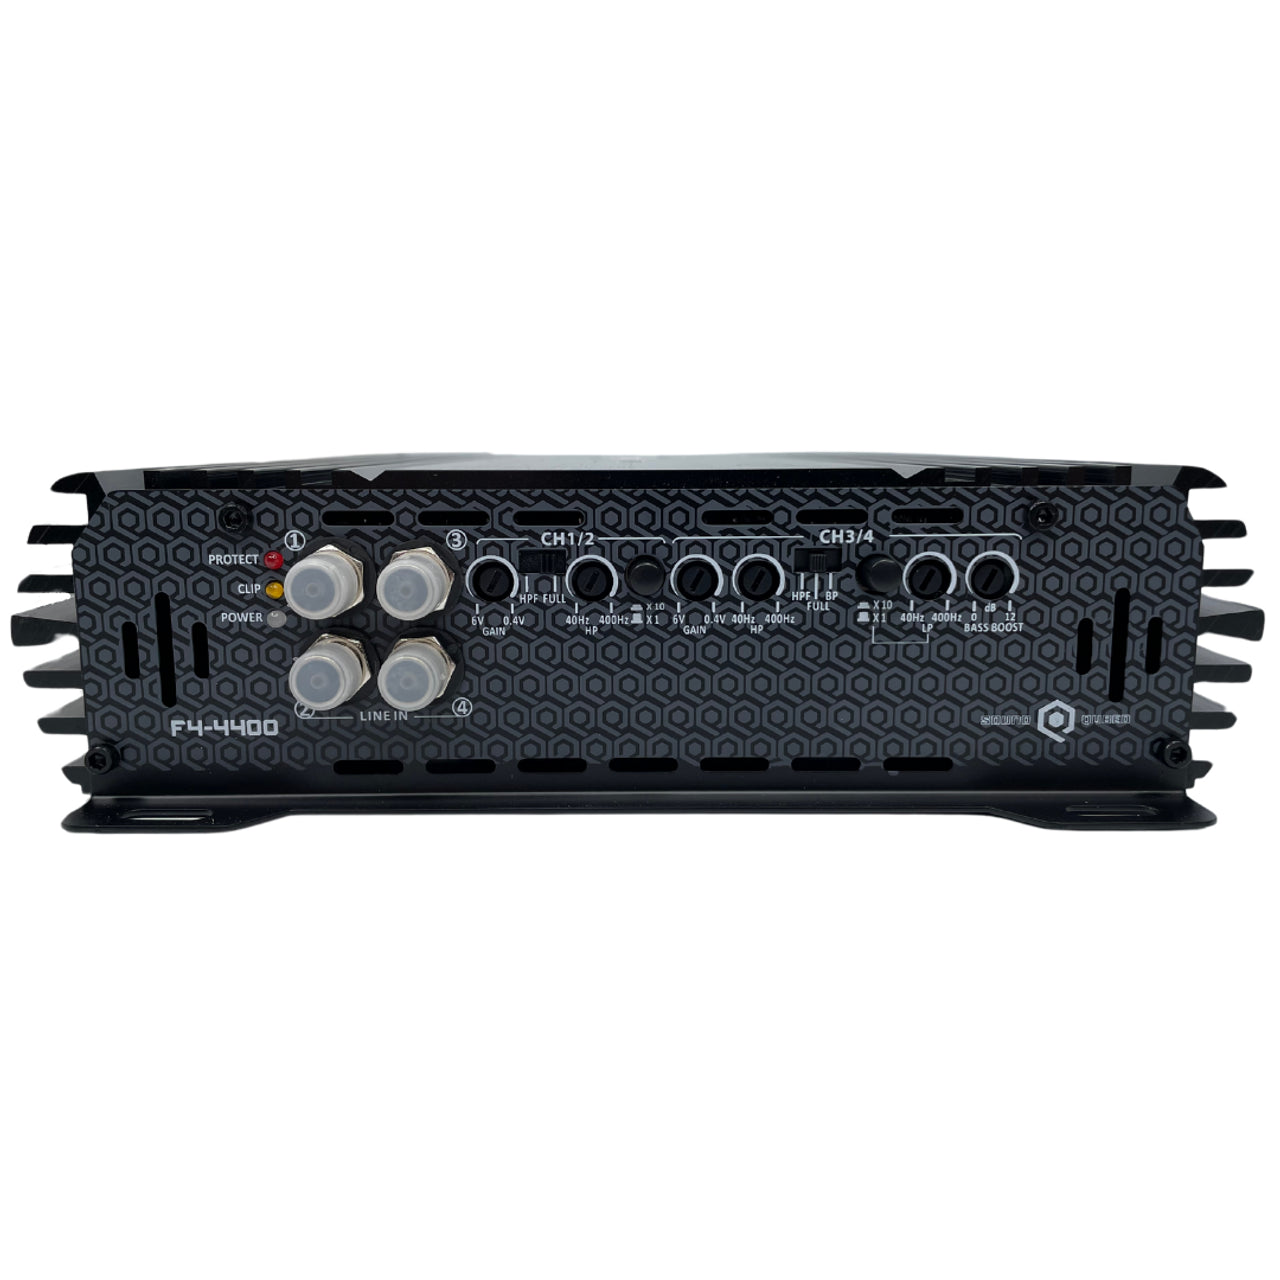 SOUNDQUBED F4-4400 Full Bridge 4400 Watt 4 Channel Amplifier